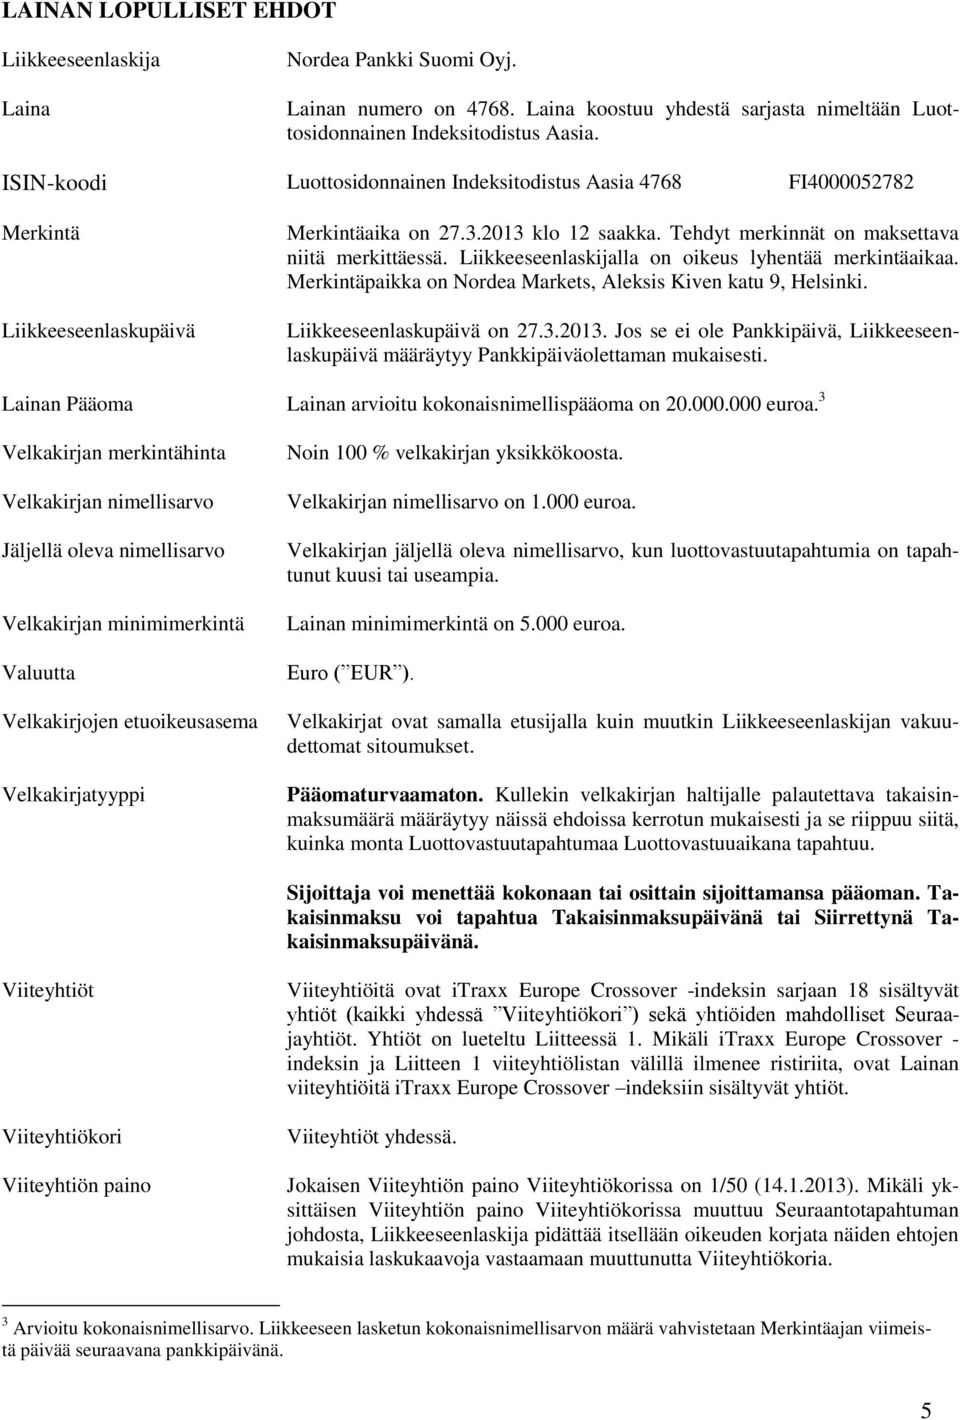 Liikkeeseenlaskijalla on oikeus lyhentää merkintäaikaa. Merkintäpaikka on Nordea Markets, Aleksis Kiven katu 9, Helsinki. Liikkeeseenlaskupäivä on 27.3.2013.